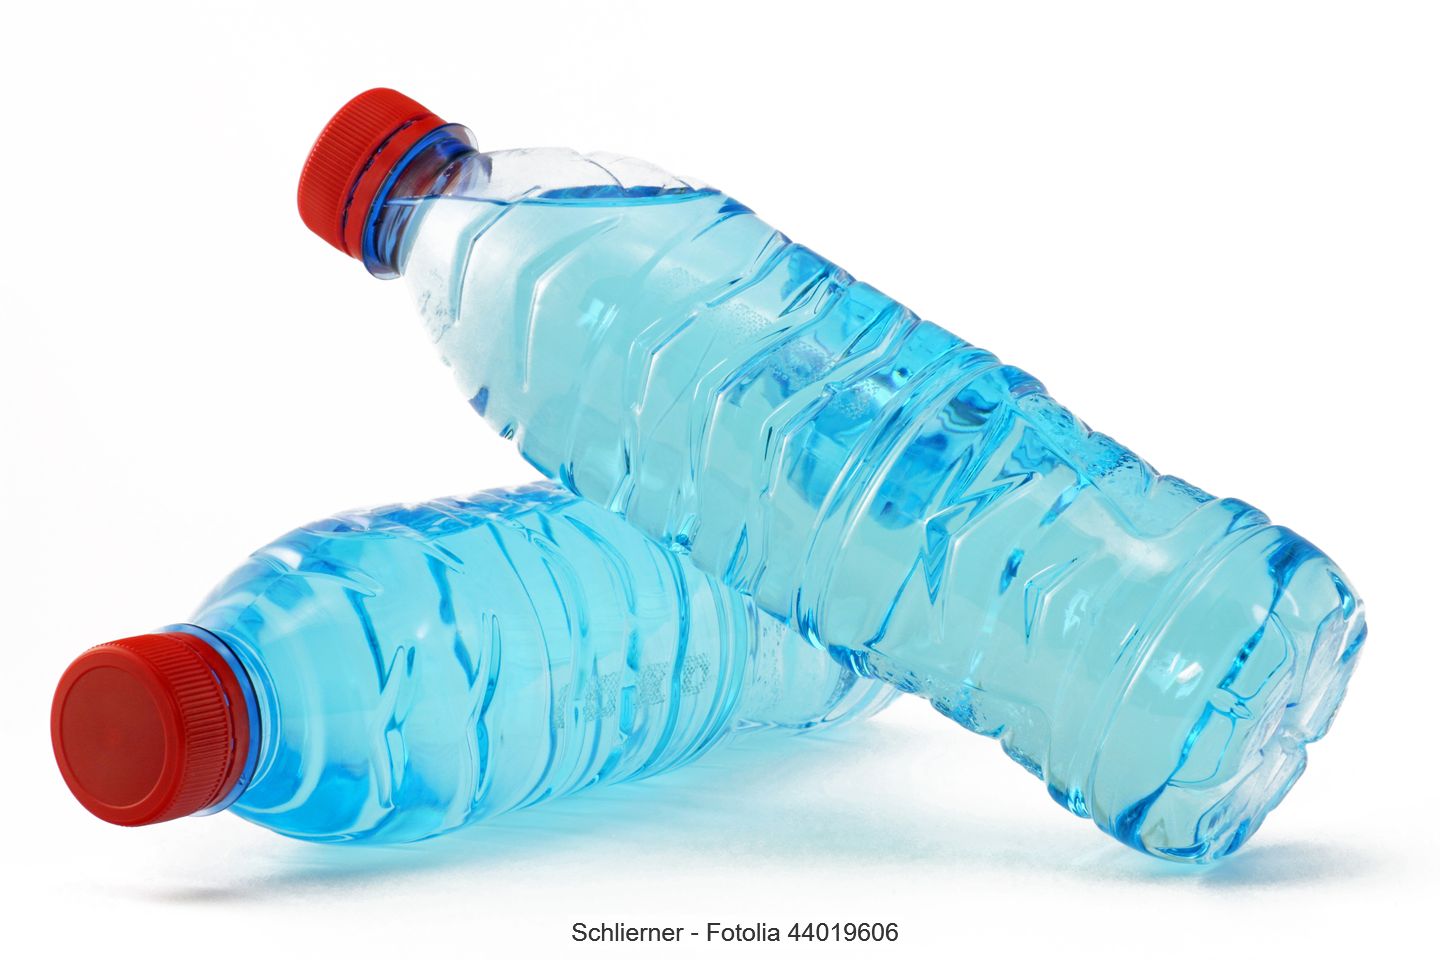 Zwei transparente Kunststoffflaschen mit roten Verschlüssen, gefüllt mit einer bläulichen Flüssigkeit.